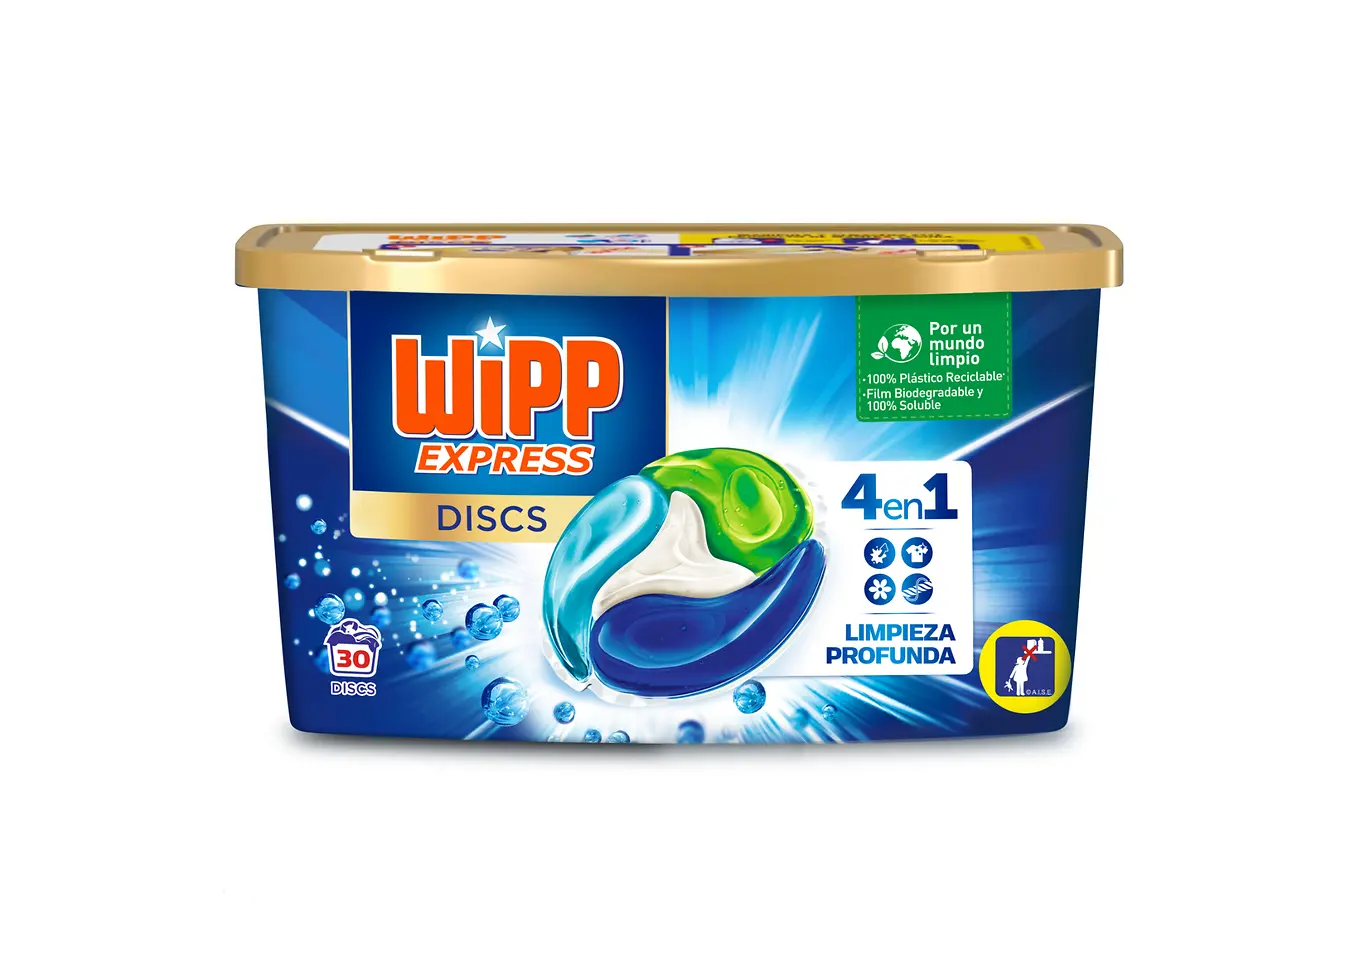 Wipp Express relanza sus Discs 4en1, ahora con un packaging más